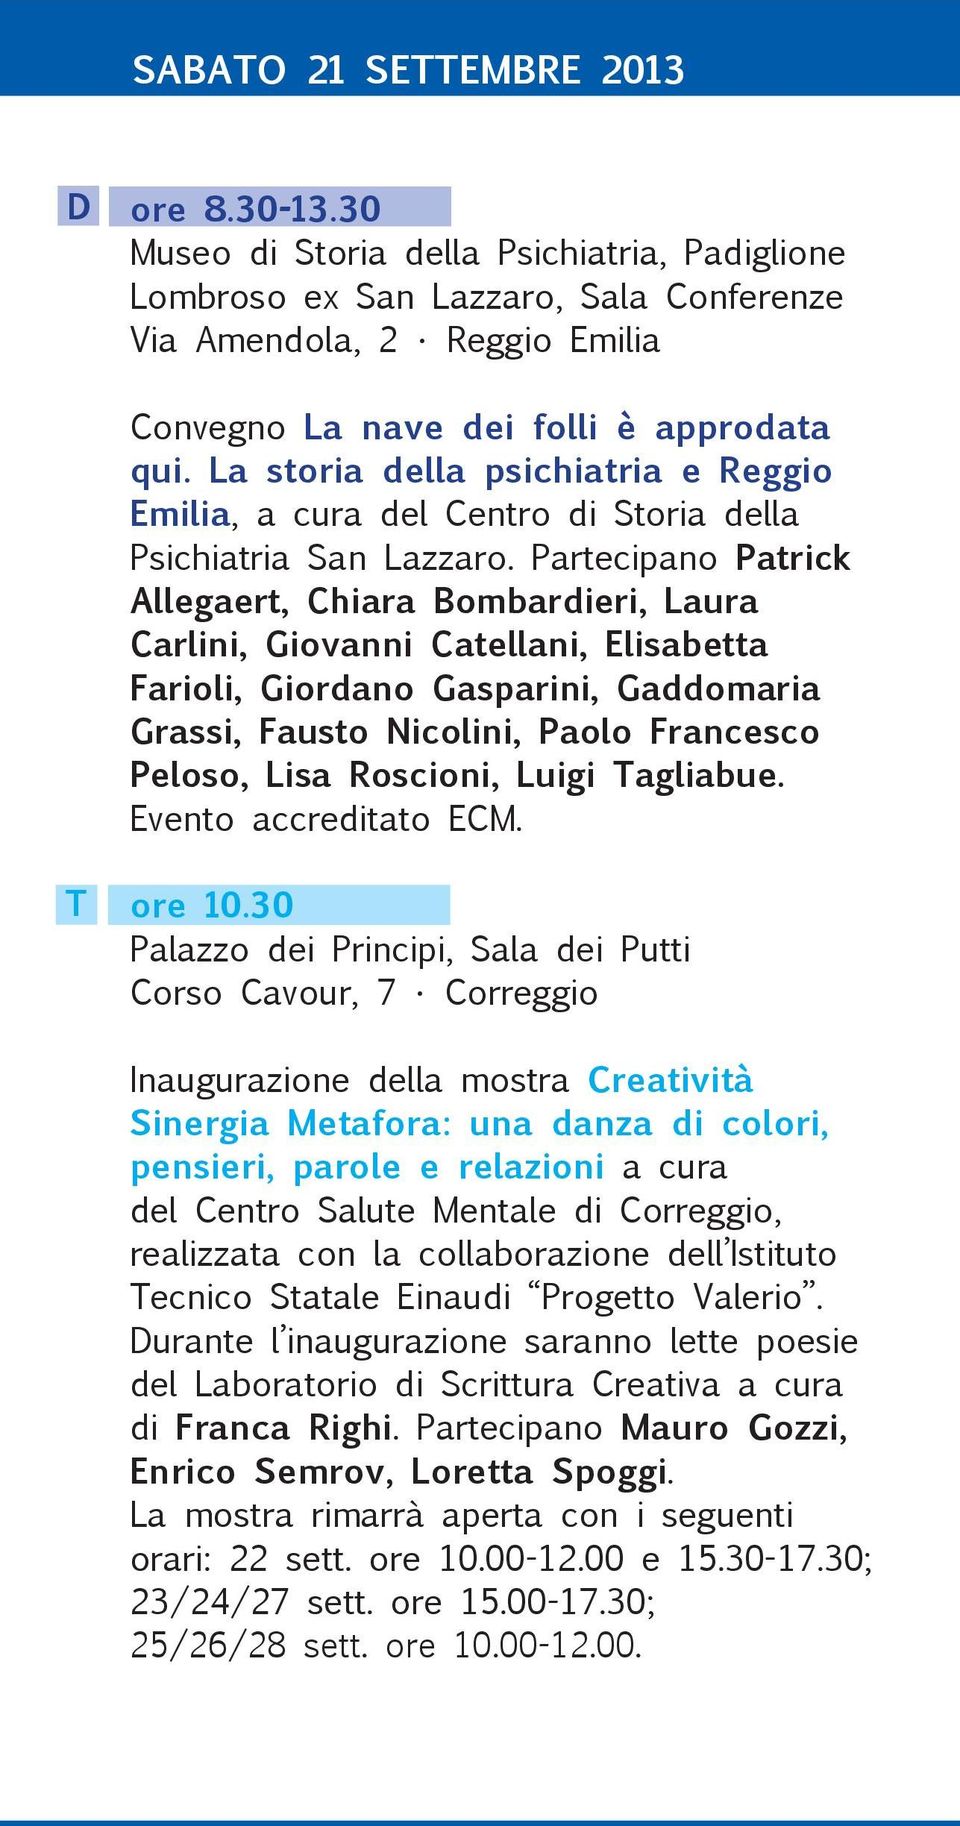 La storia della psichiatria e Reggio Emilia, a cura del Centro di Storia della Psichiatria San Lazzaro.